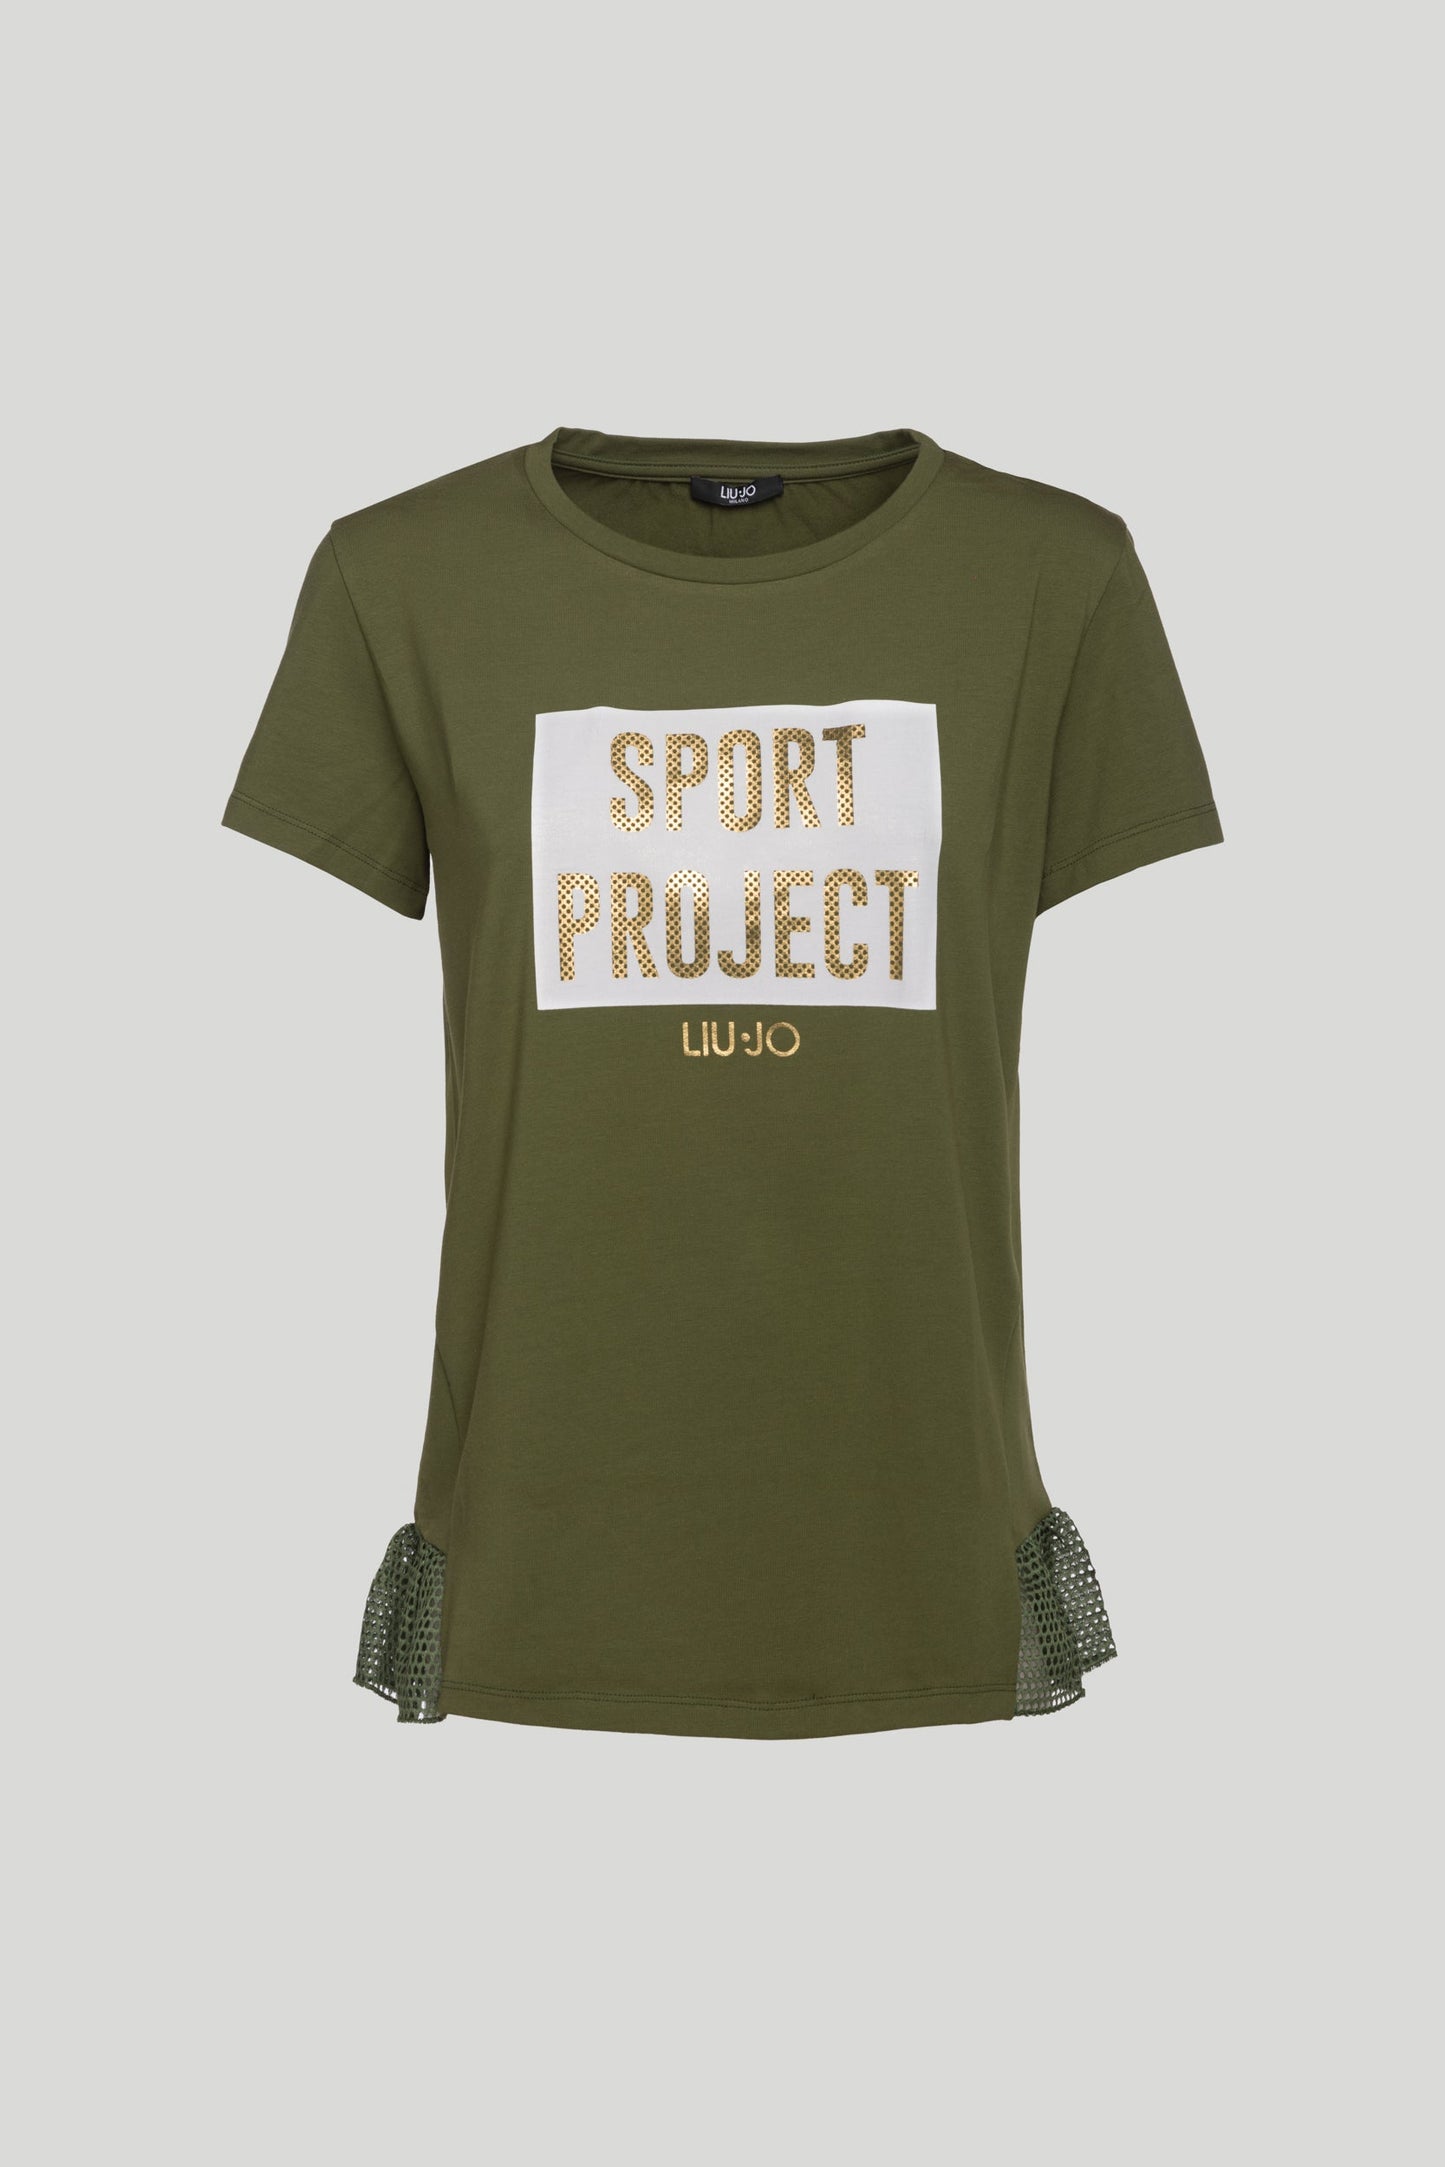 LIU-JO "SPORT PROJECT" T-Shirt Military Green